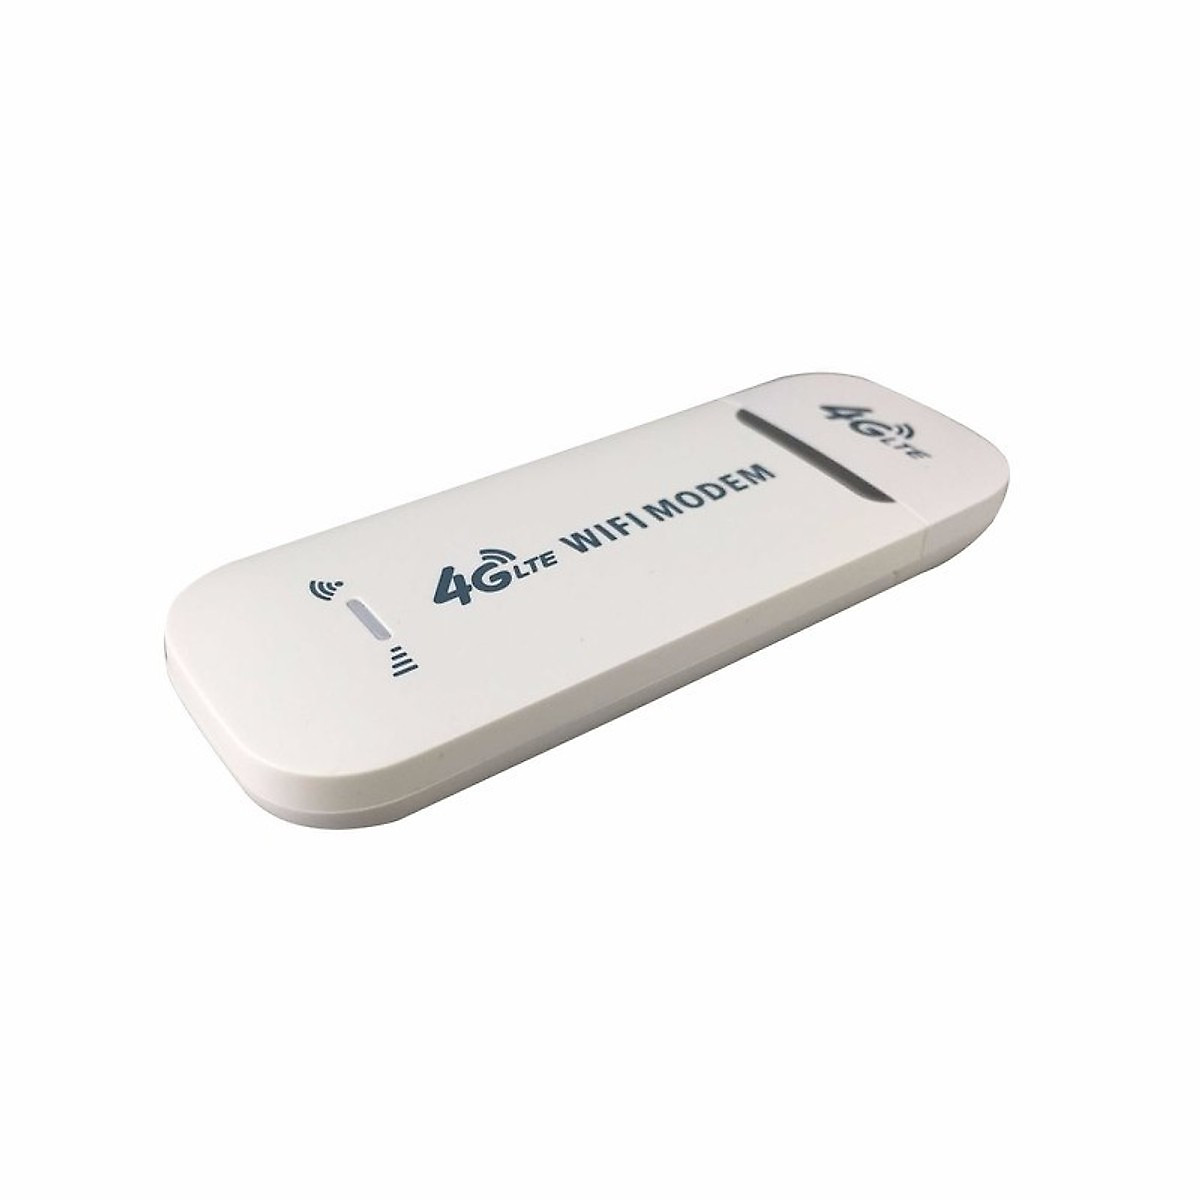 USB PHÁT WIFI 4G LTE DONGLE- PHIỂN BẢN MỚI NHẤT